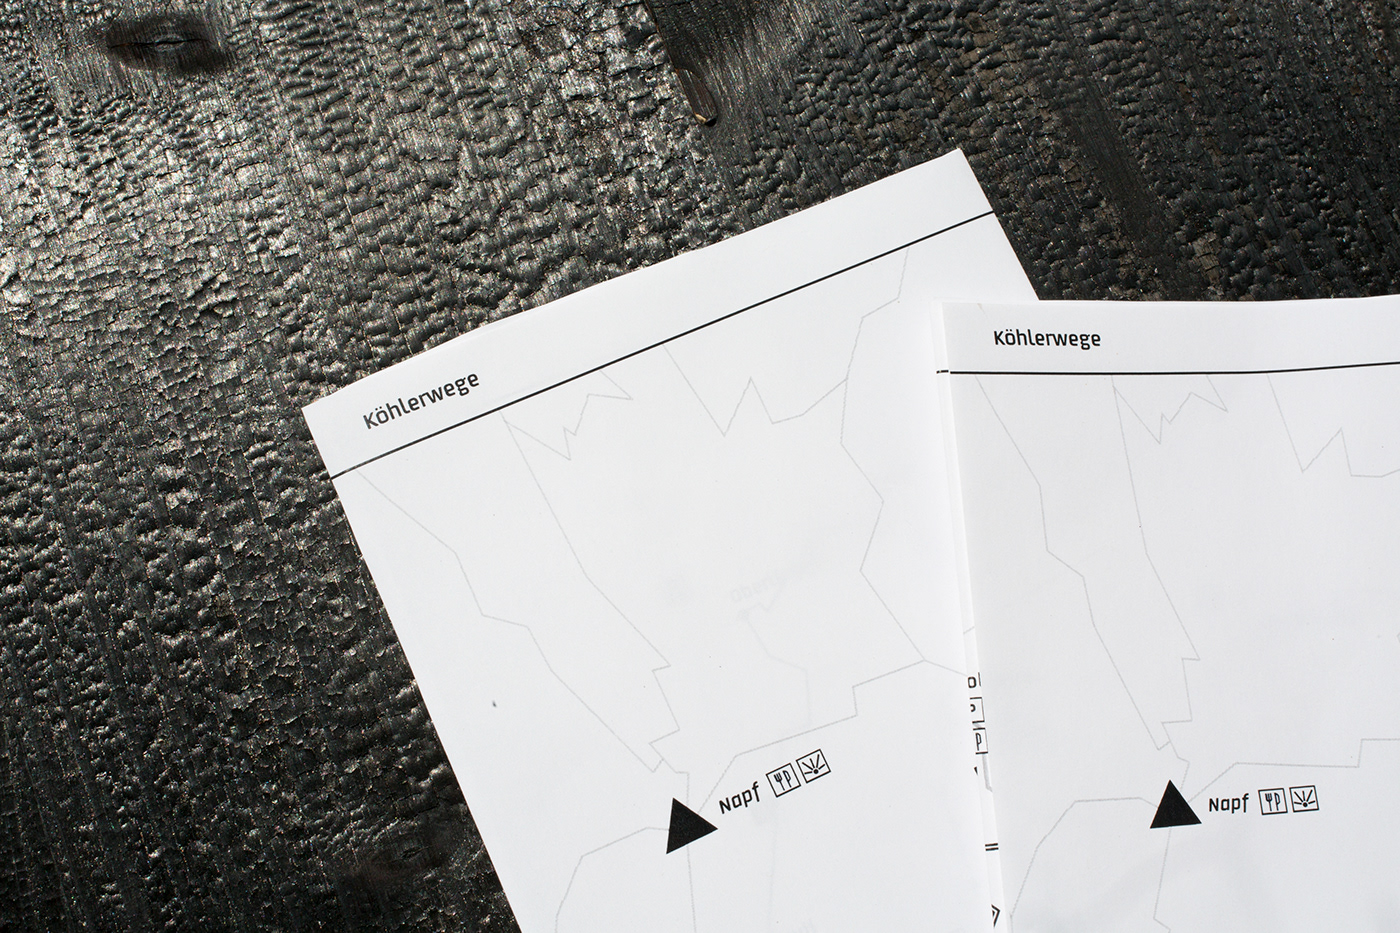 Signaletik wanderwege kohle Kohler typografie Holz Wegweiser karte orientierungssystem graphicdesign